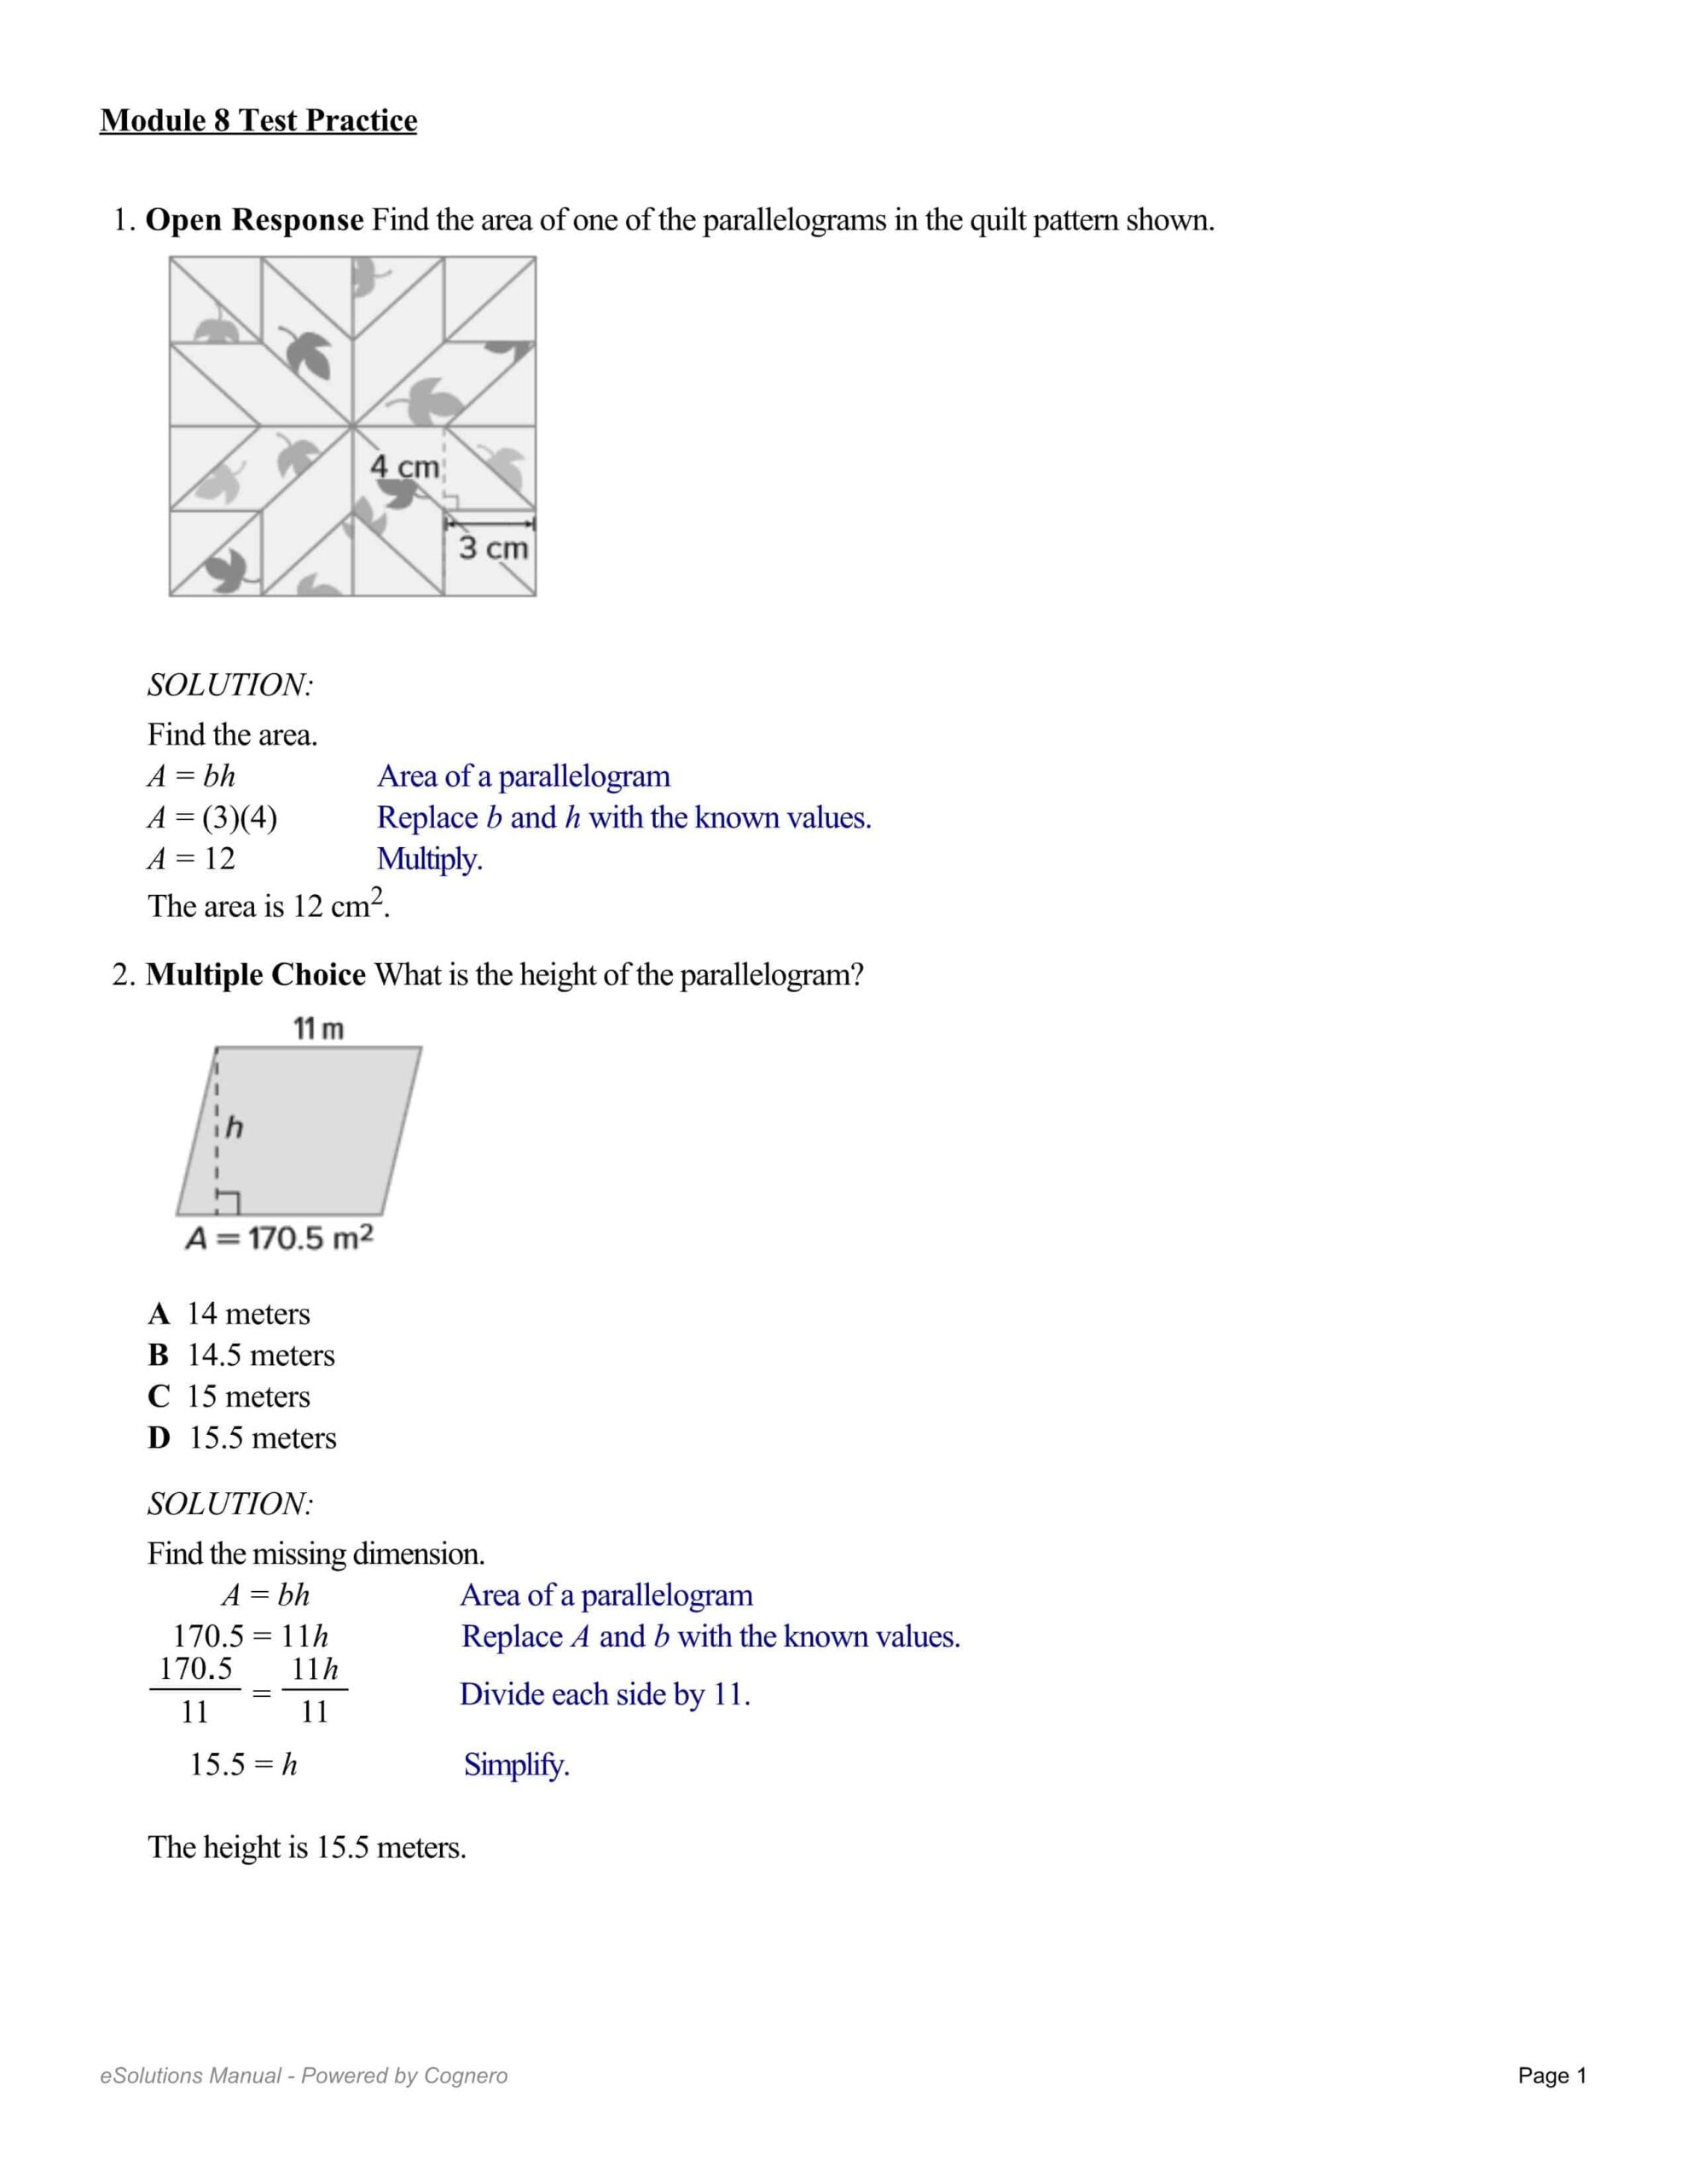 حل أوراق عمل Module 8 Test Practice الرياضيات المتكاملة الصف السادس